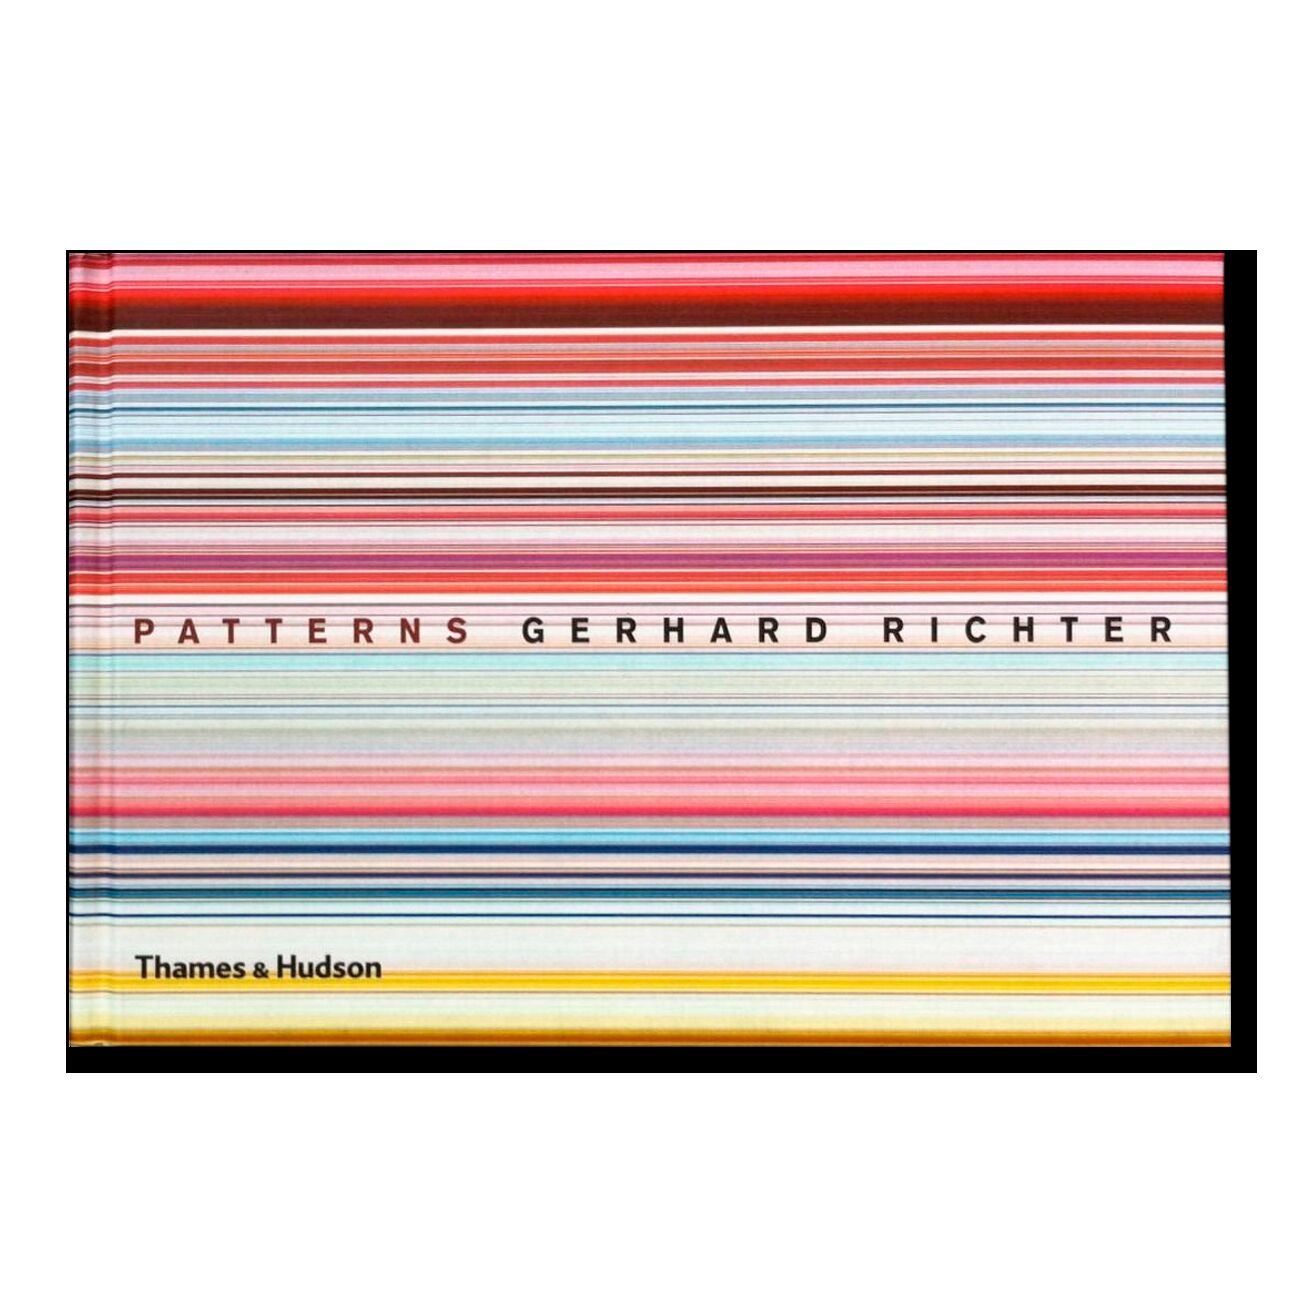 Gerhard Richter. Patterns